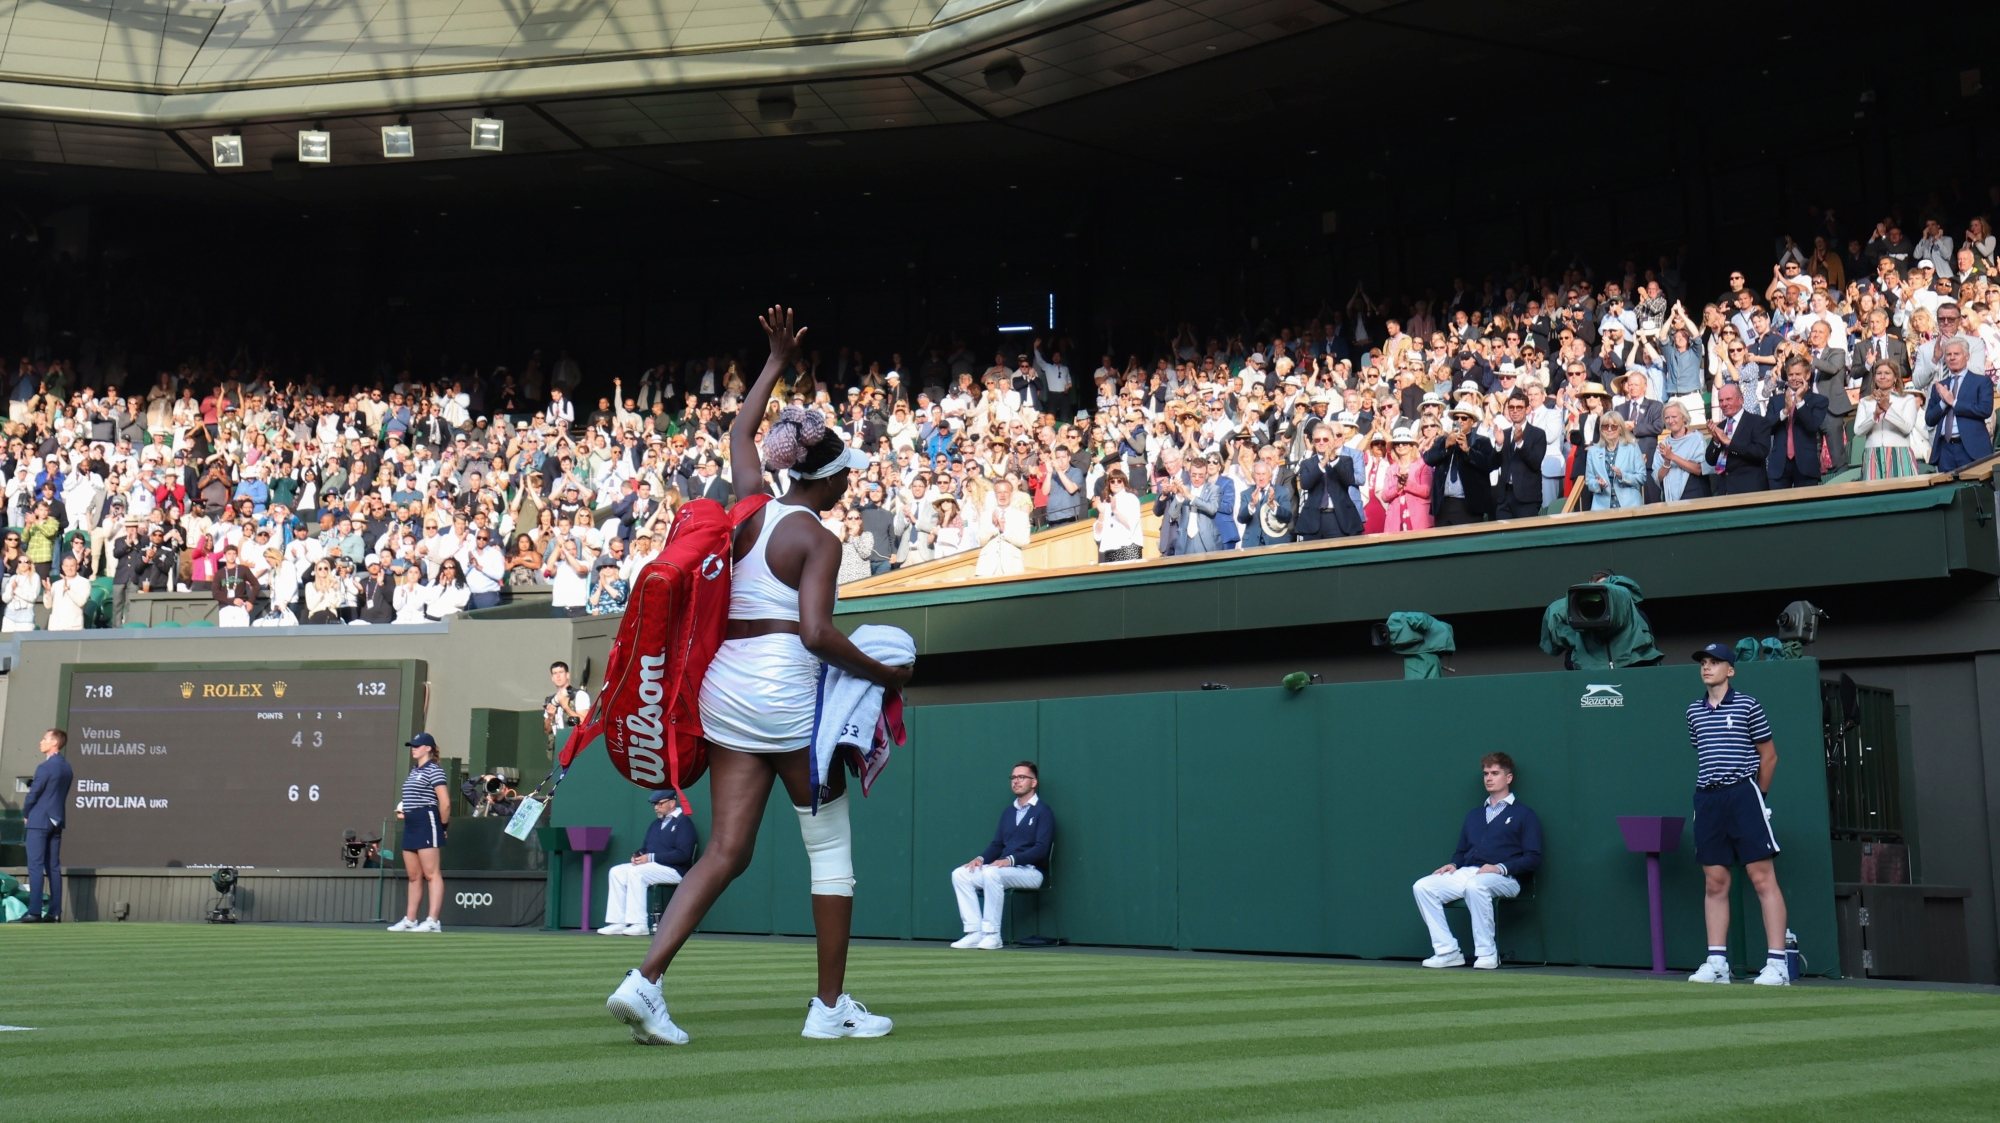 Venus Williams saiu do court central de Wimbledon debaixo de uma ovação após um encontro frente a Svitolina onde jogou condicionada pela lesão num joelho